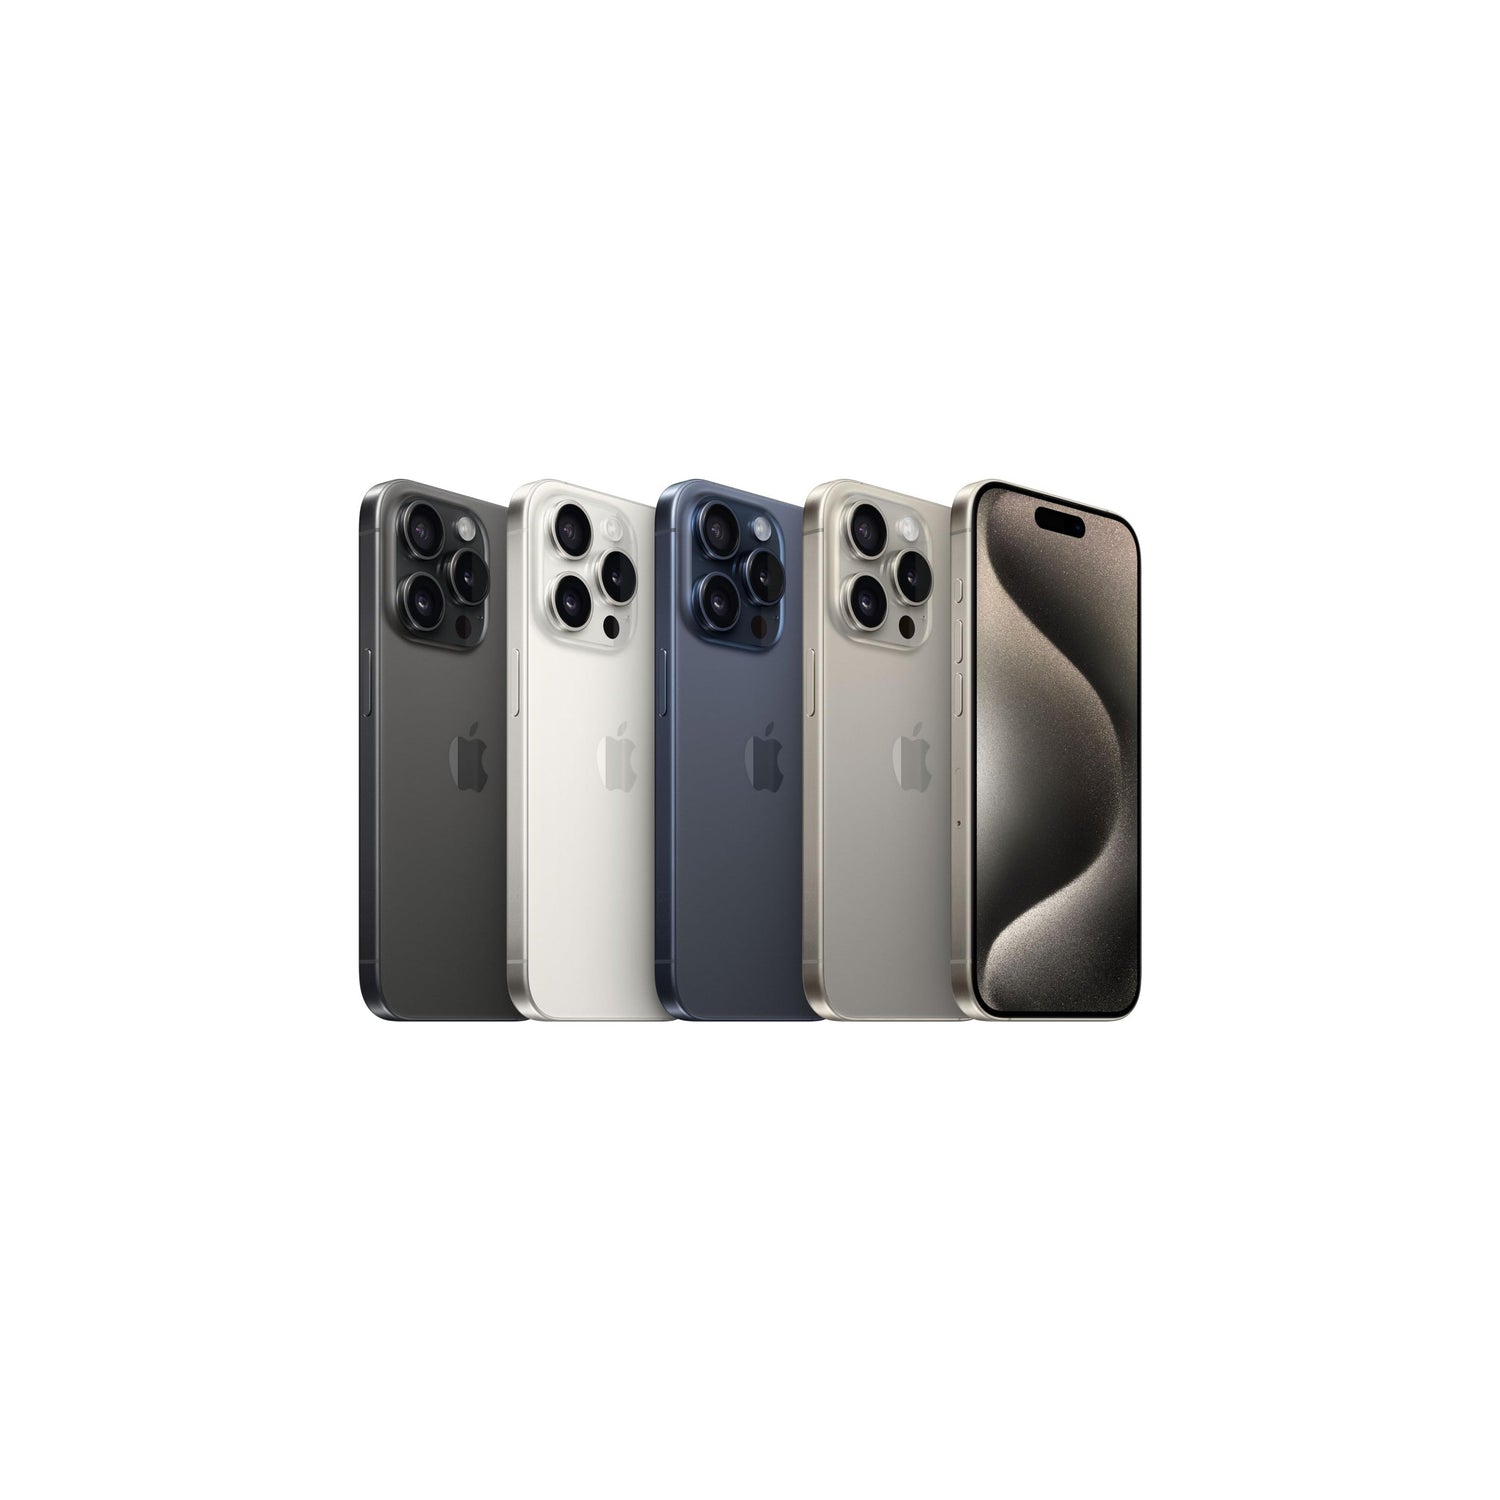 Apple iPhone 15 Pro (1 TB) - Titanio naturale-iStoreMilano